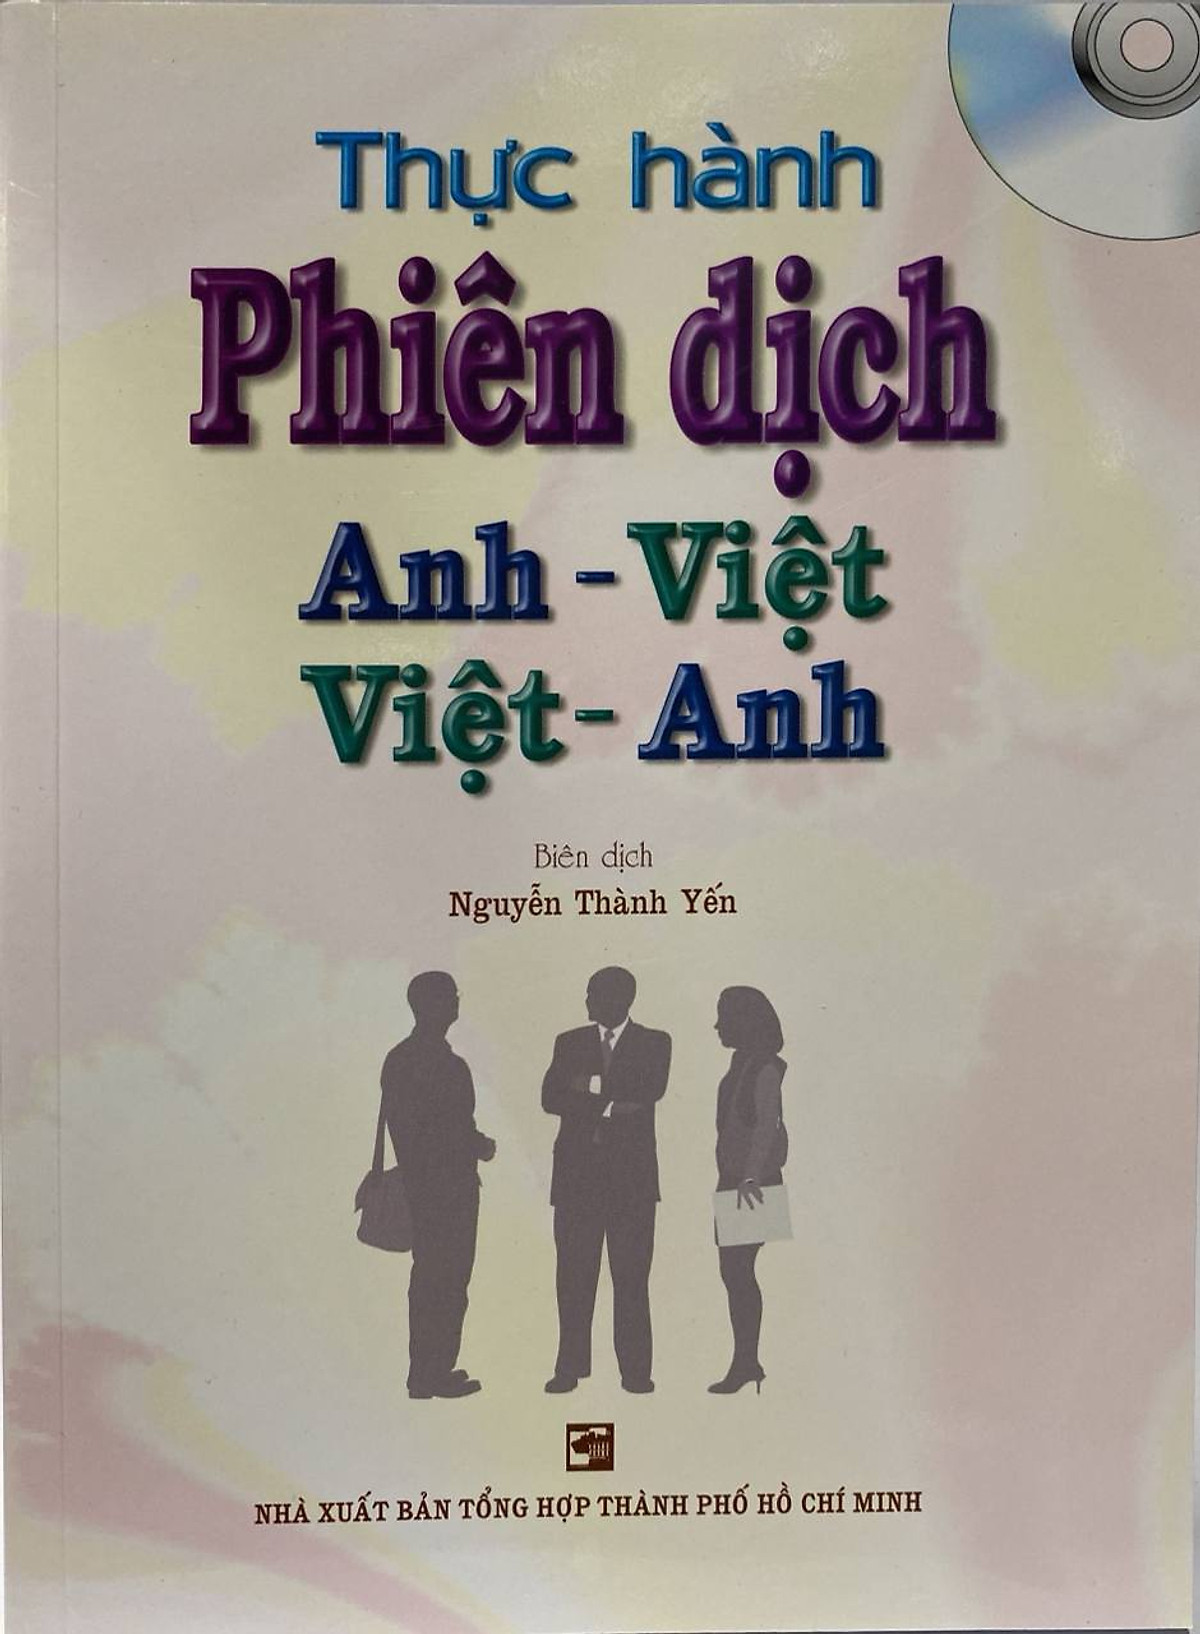 Mua Thực Hành Phiên Dịch Anh-Việt Việt-Anh Tại Tiki Trading